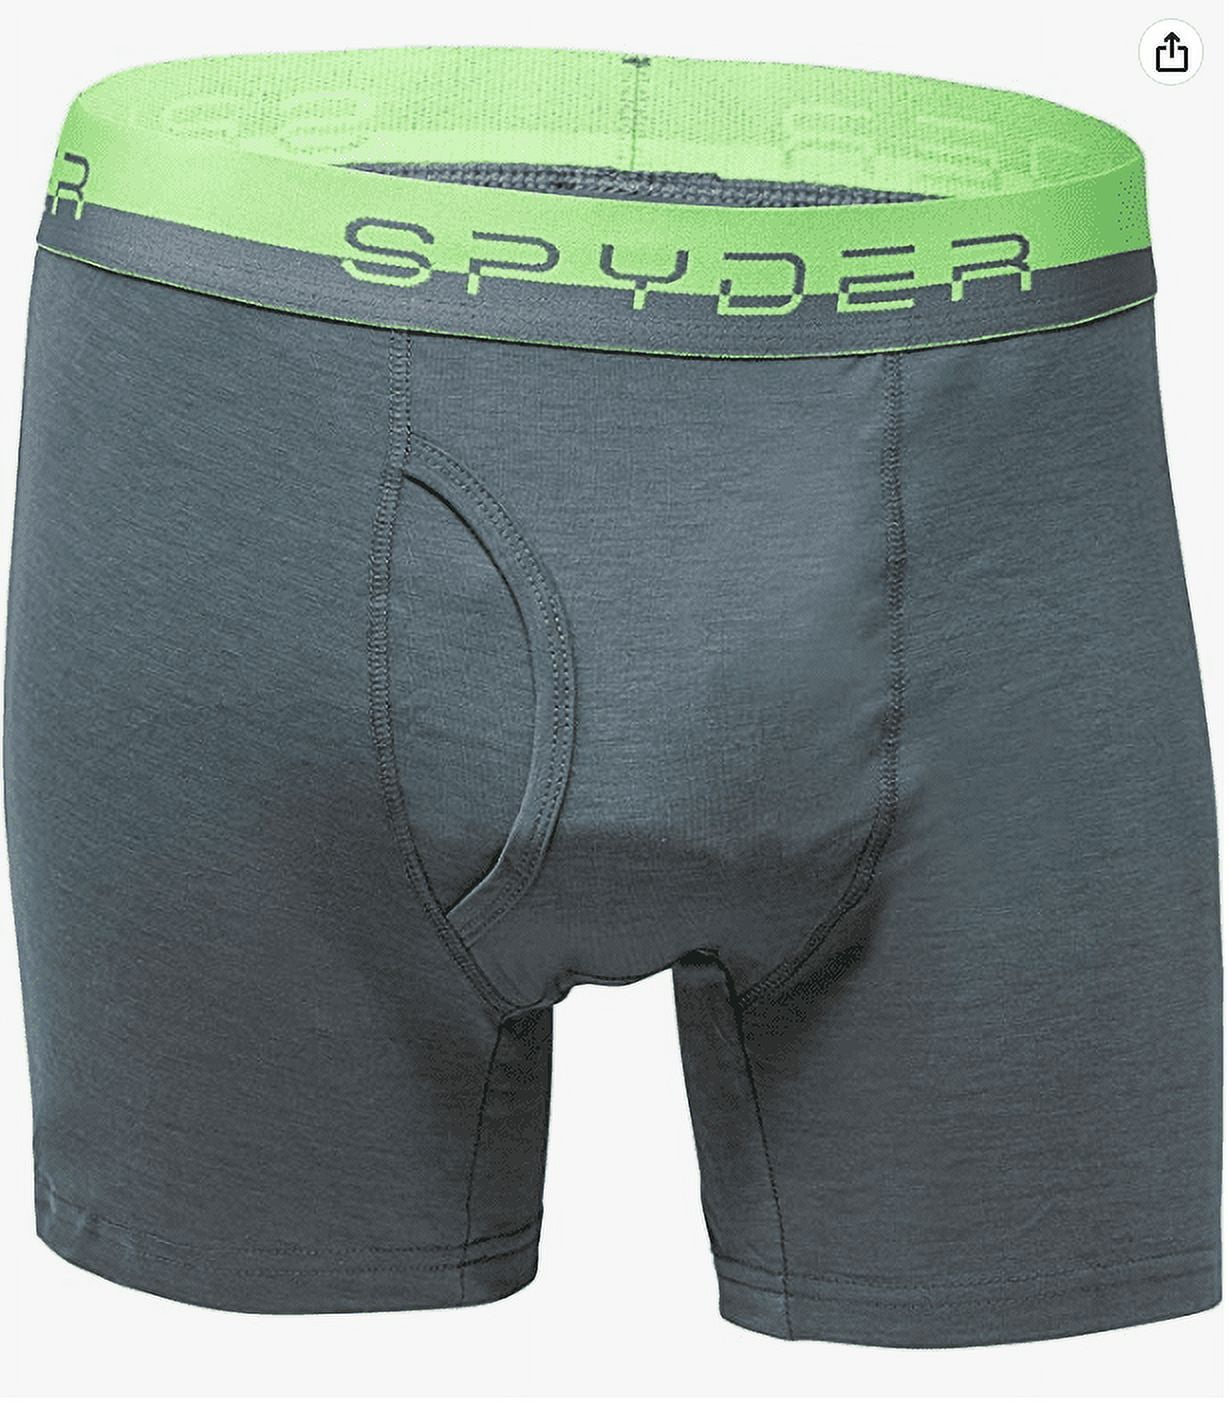 Spyder Underwear for Men, Online Sale up to 40% off